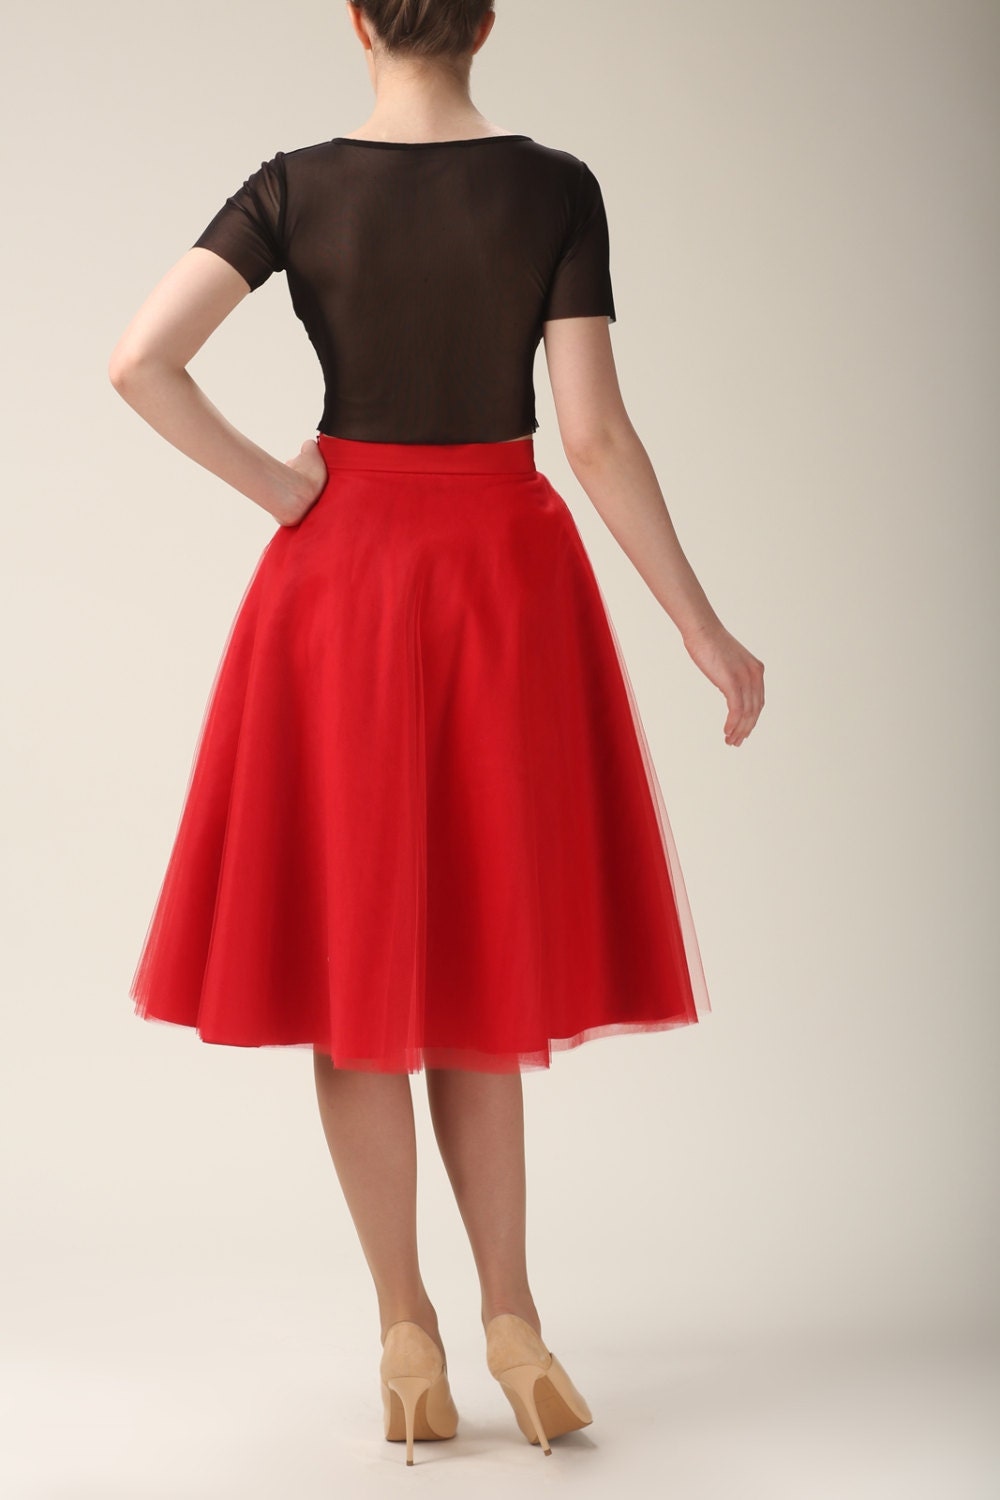 Tea-length tulle skirt with pockets tulle skirtred skirt